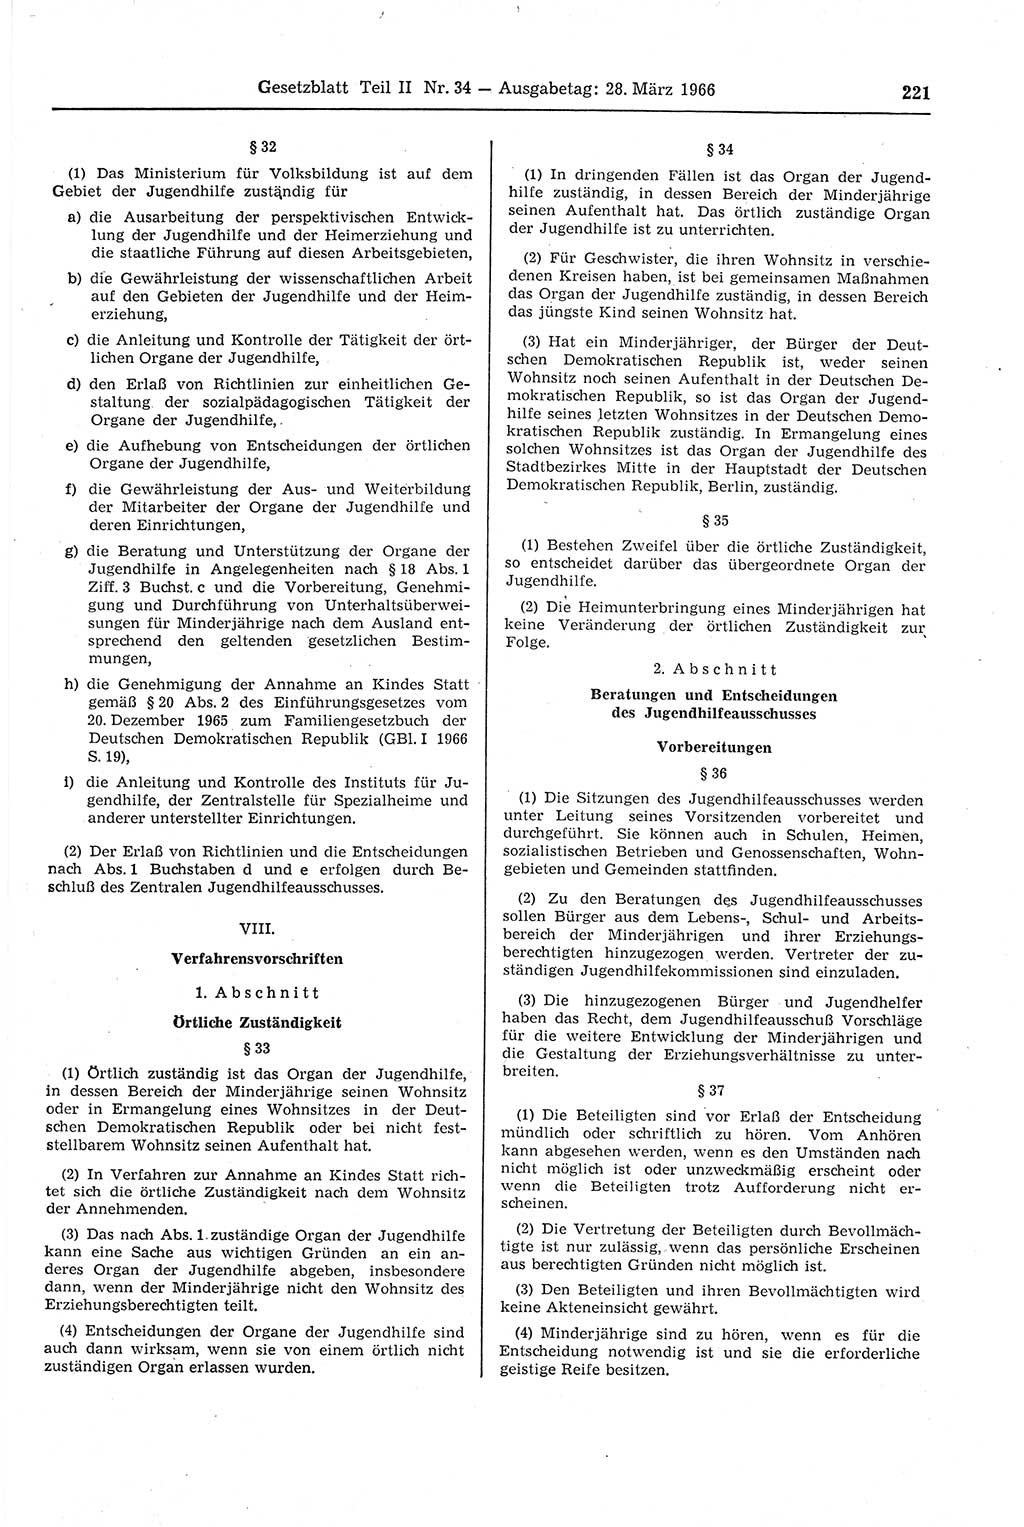 Gesetzblatt (GBl.) der Deutschen Demokratischen Republik (DDR) Teil ⅠⅠ 1966, Seite 221 (GBl. DDR ⅠⅠ 1966, S. 221)